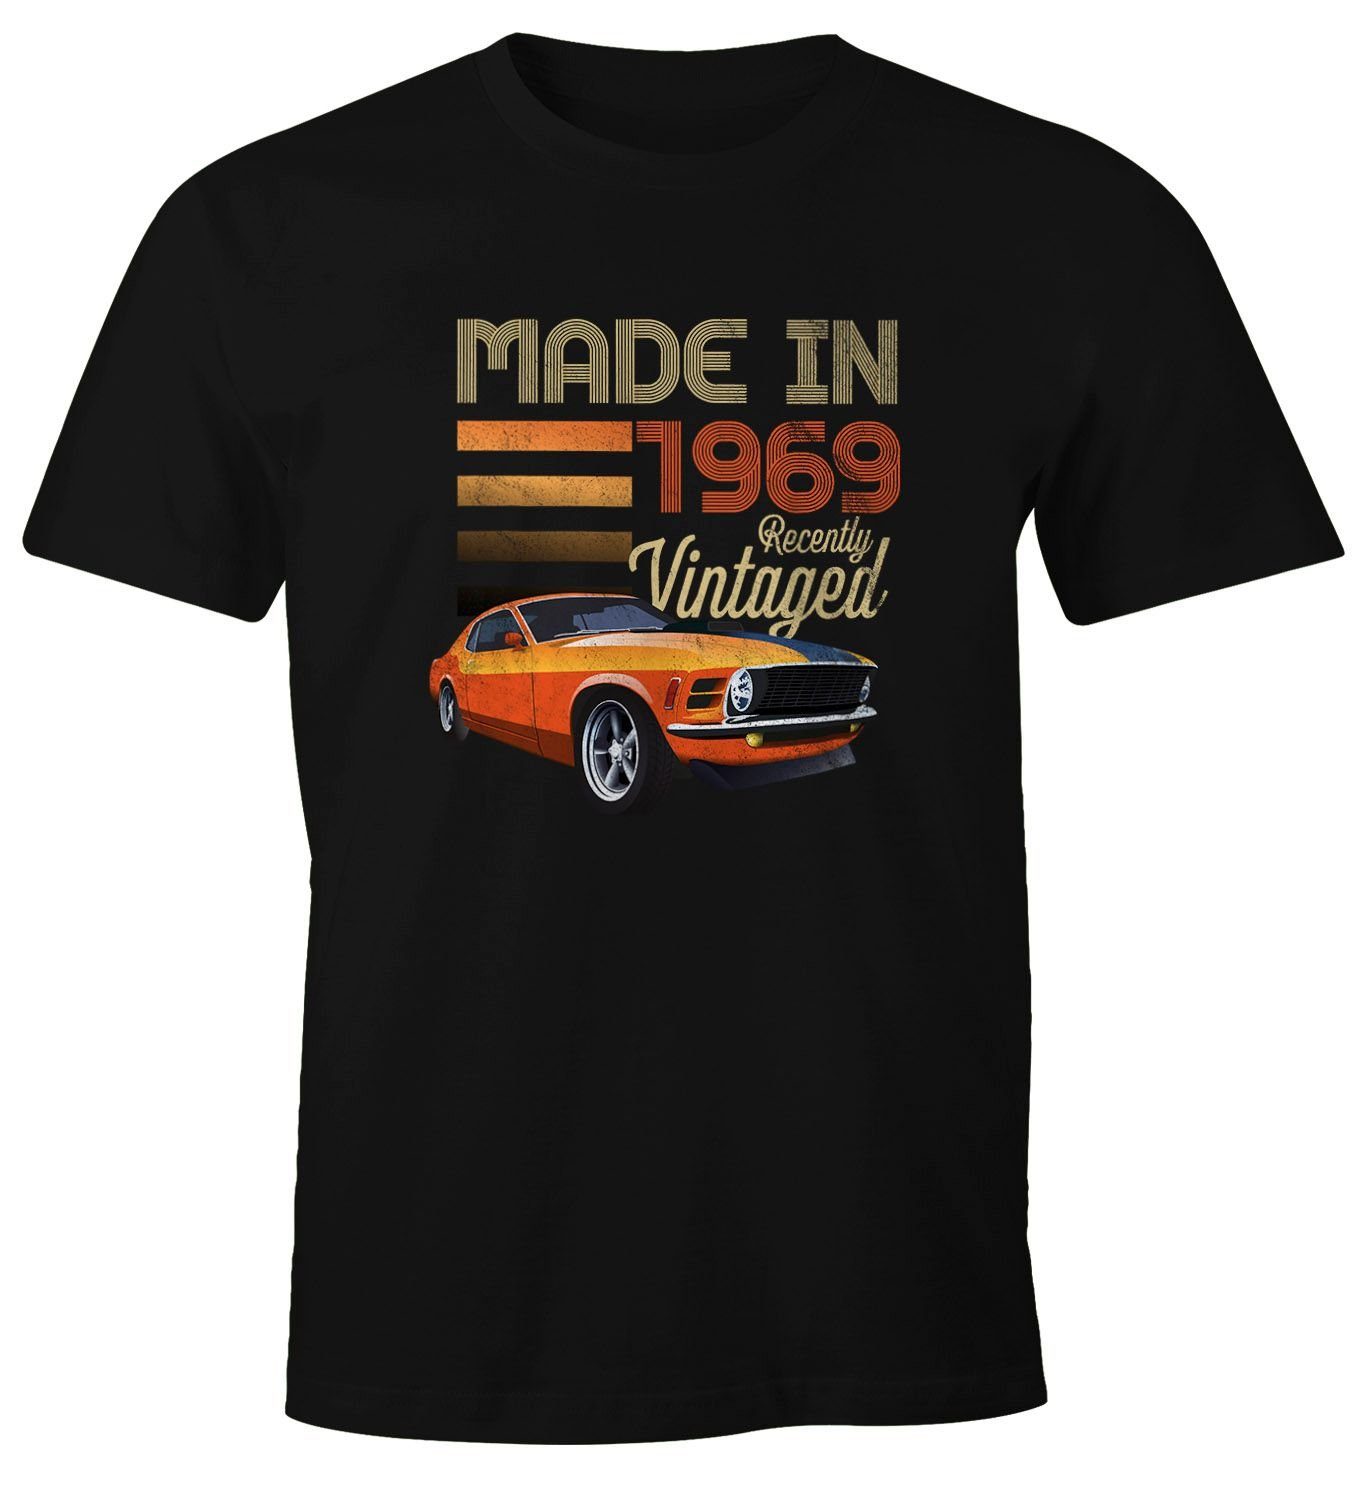 Moonworks® Vintage 1969 Print-Shirt Fun-Shirt Geburtstag Herren 70er MoonWorks mit T-Shirt Retro Print schwarz siebziger Auto Oldtimer